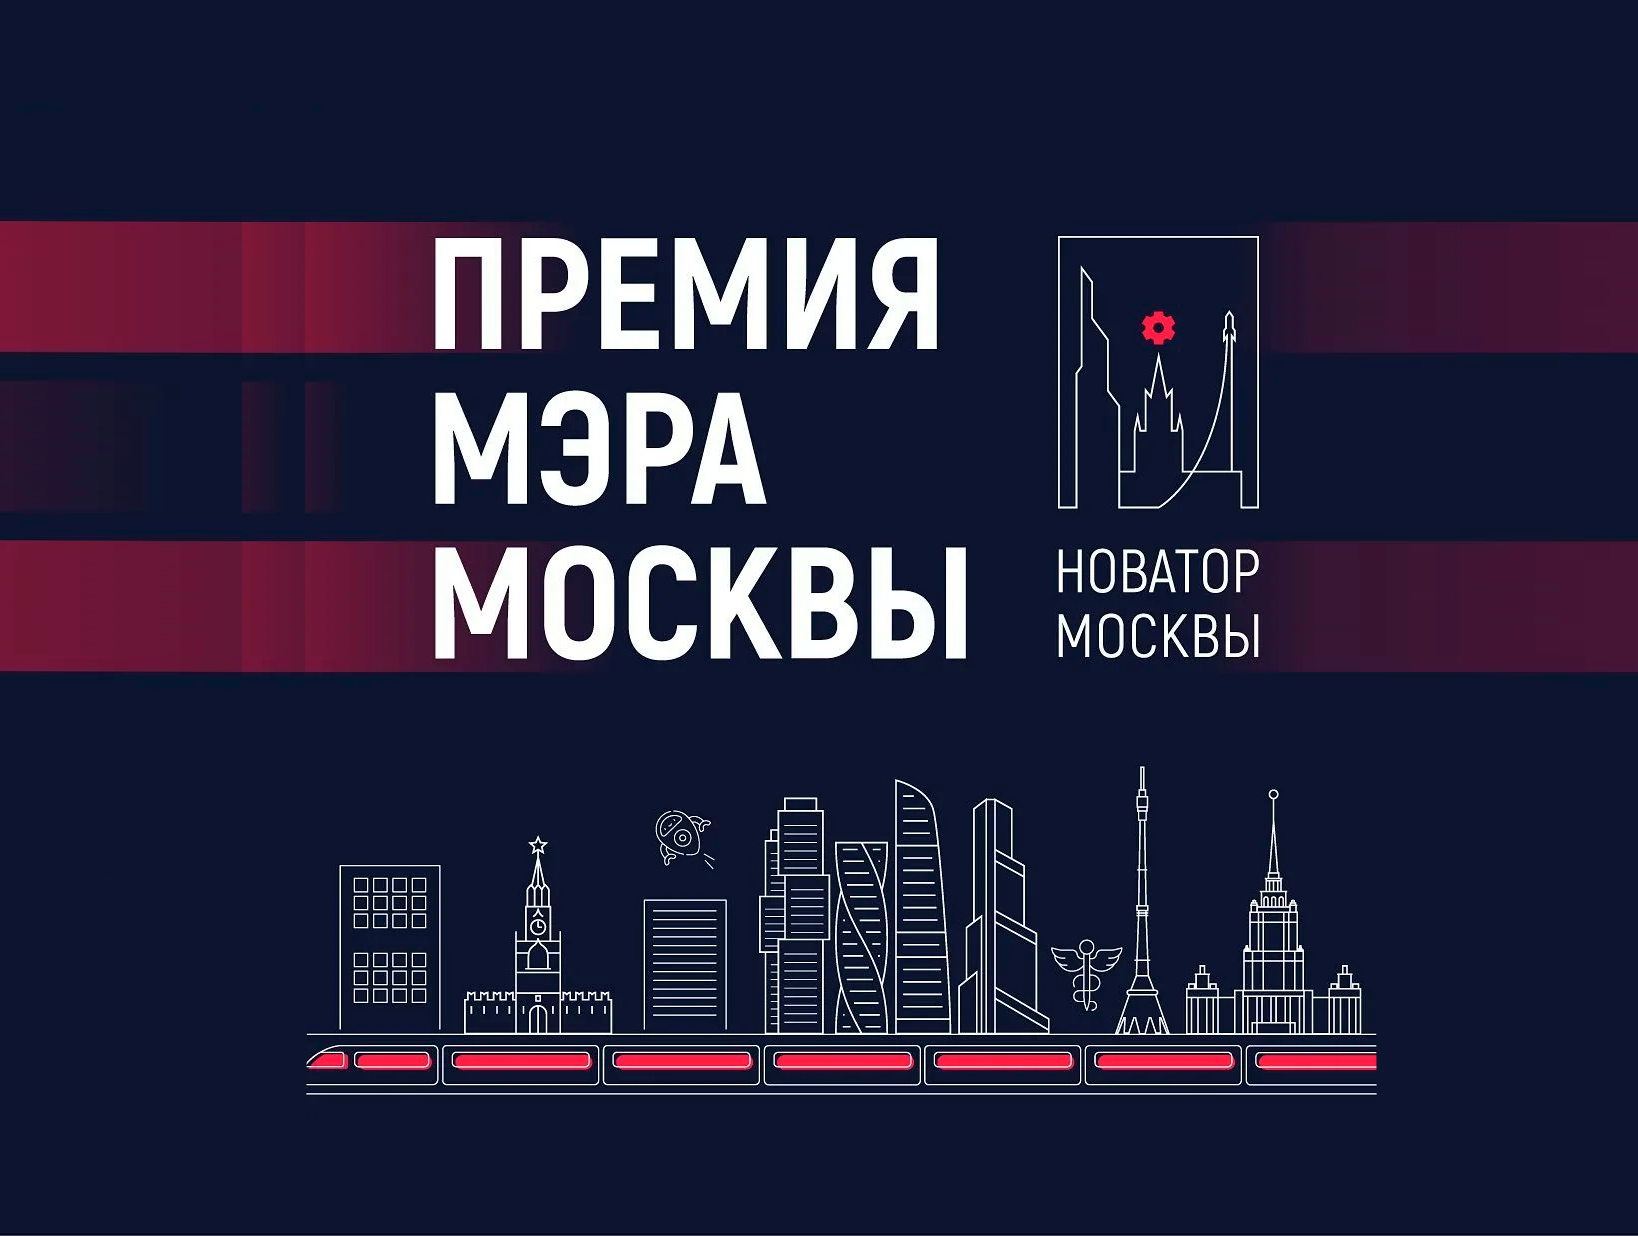 Проект ученых Центра диагностики и телемедицины ДЗМ вышел в финал Премии Мэра Москвы